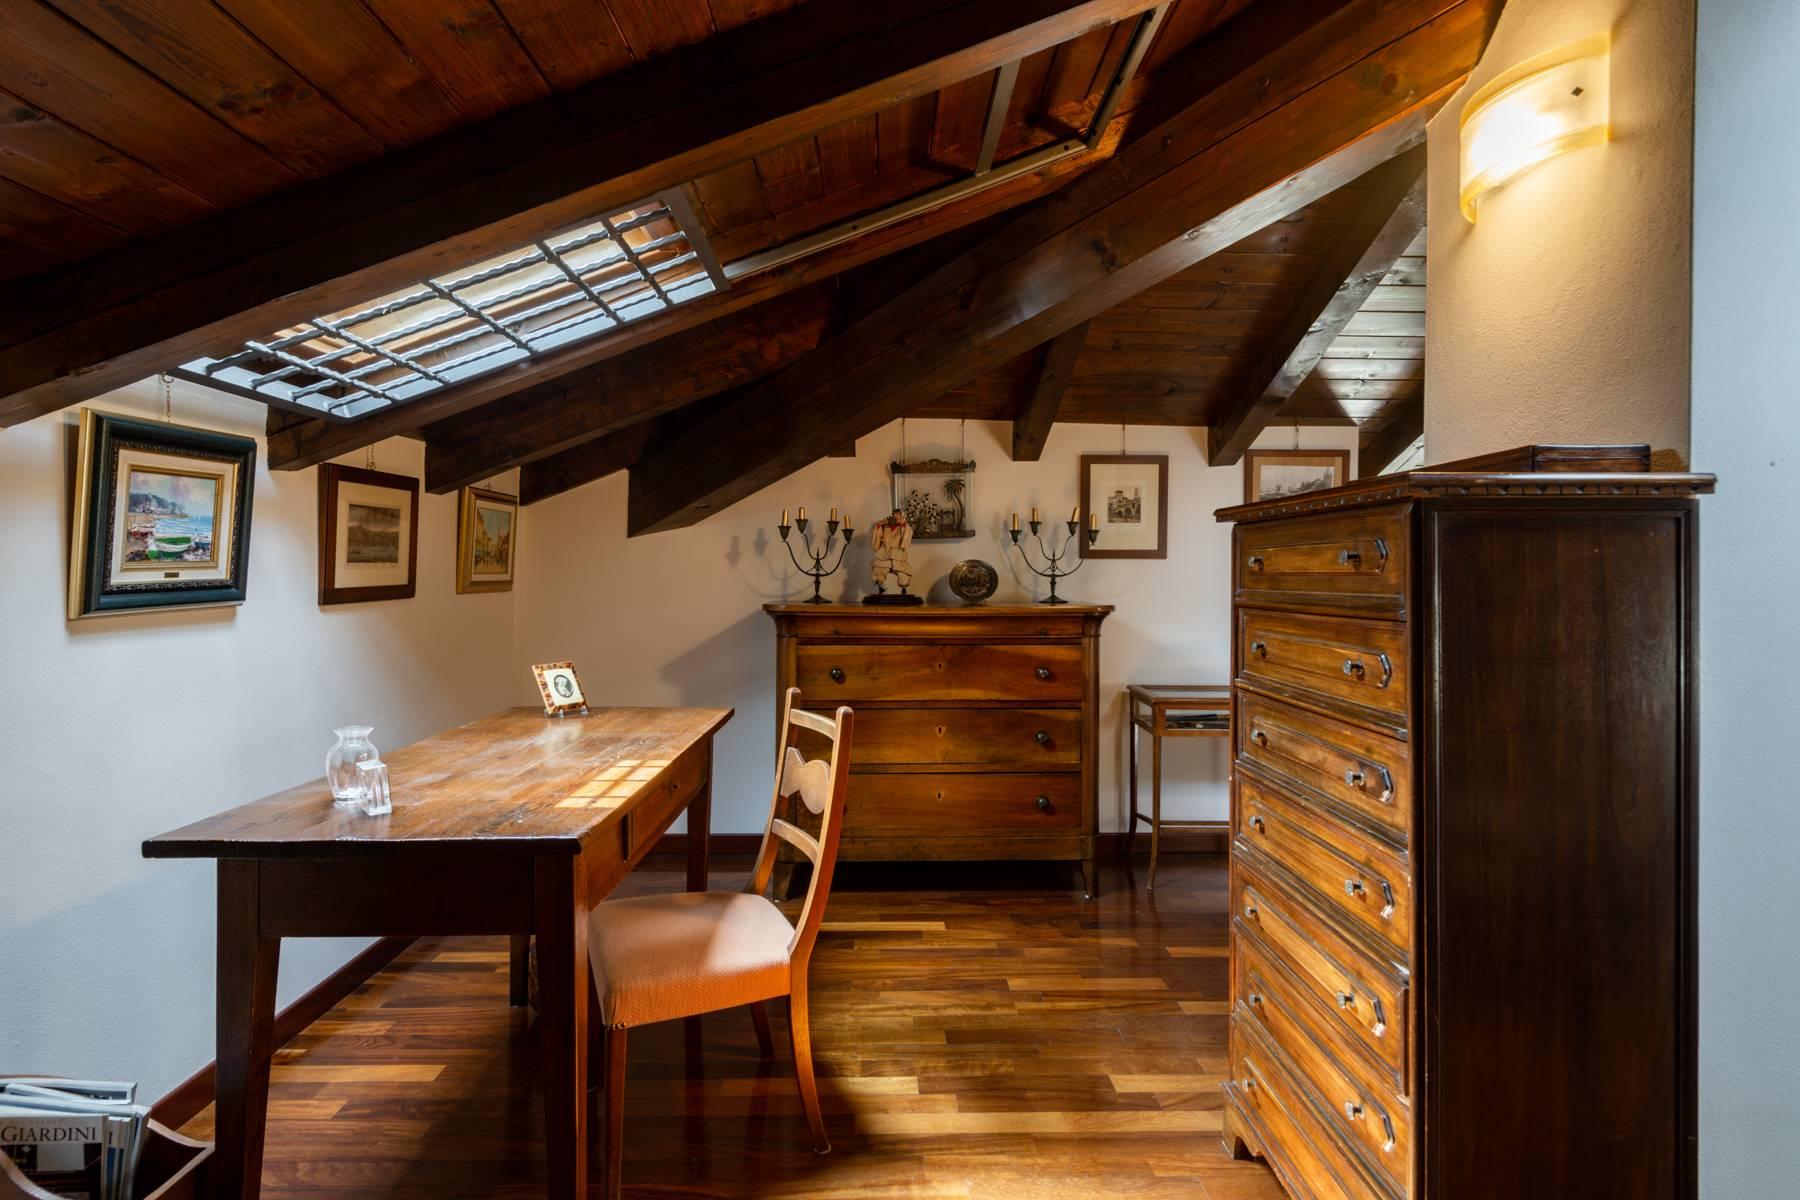 Splendido attico in Villa stile Liberty a pochi minuti dal centro storico di Verona - 26